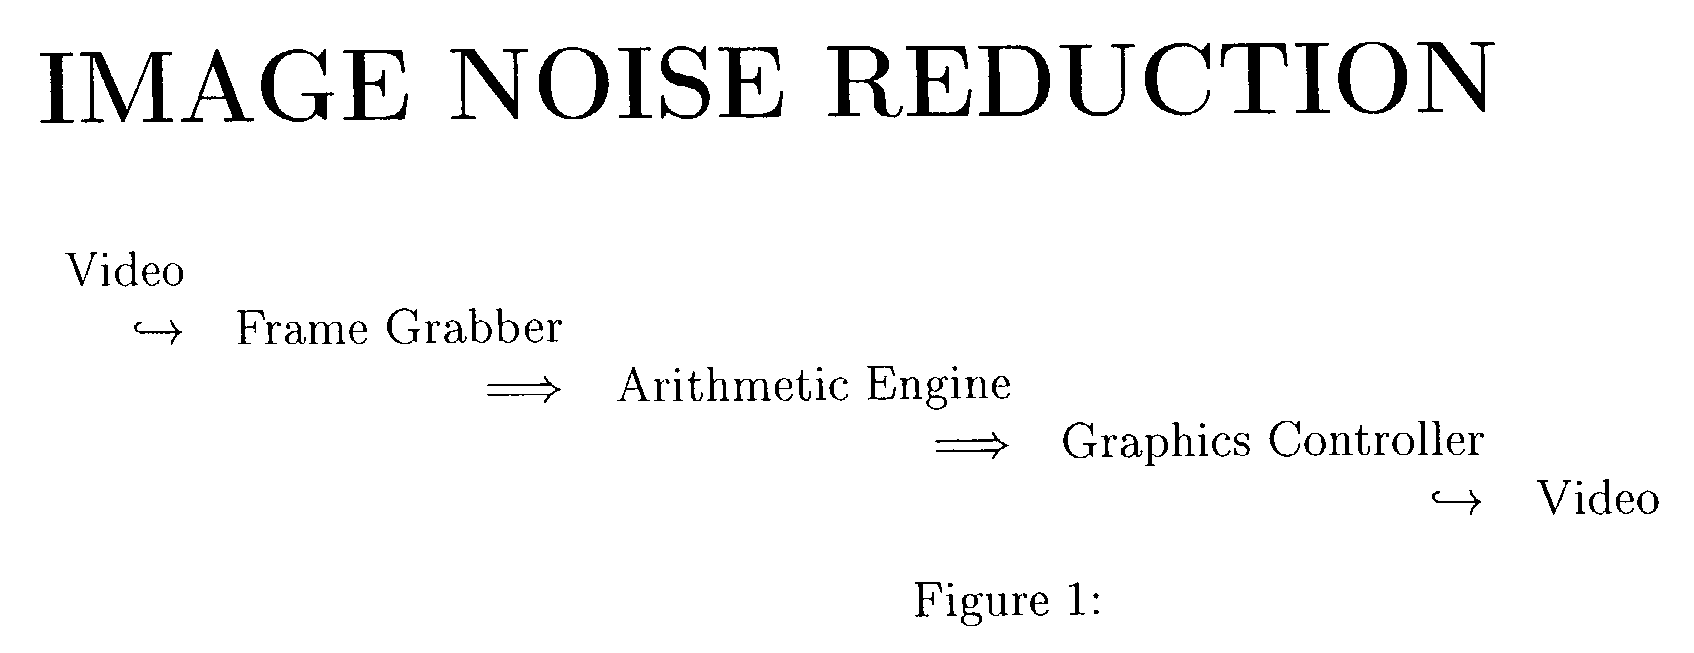 Image noise reduction